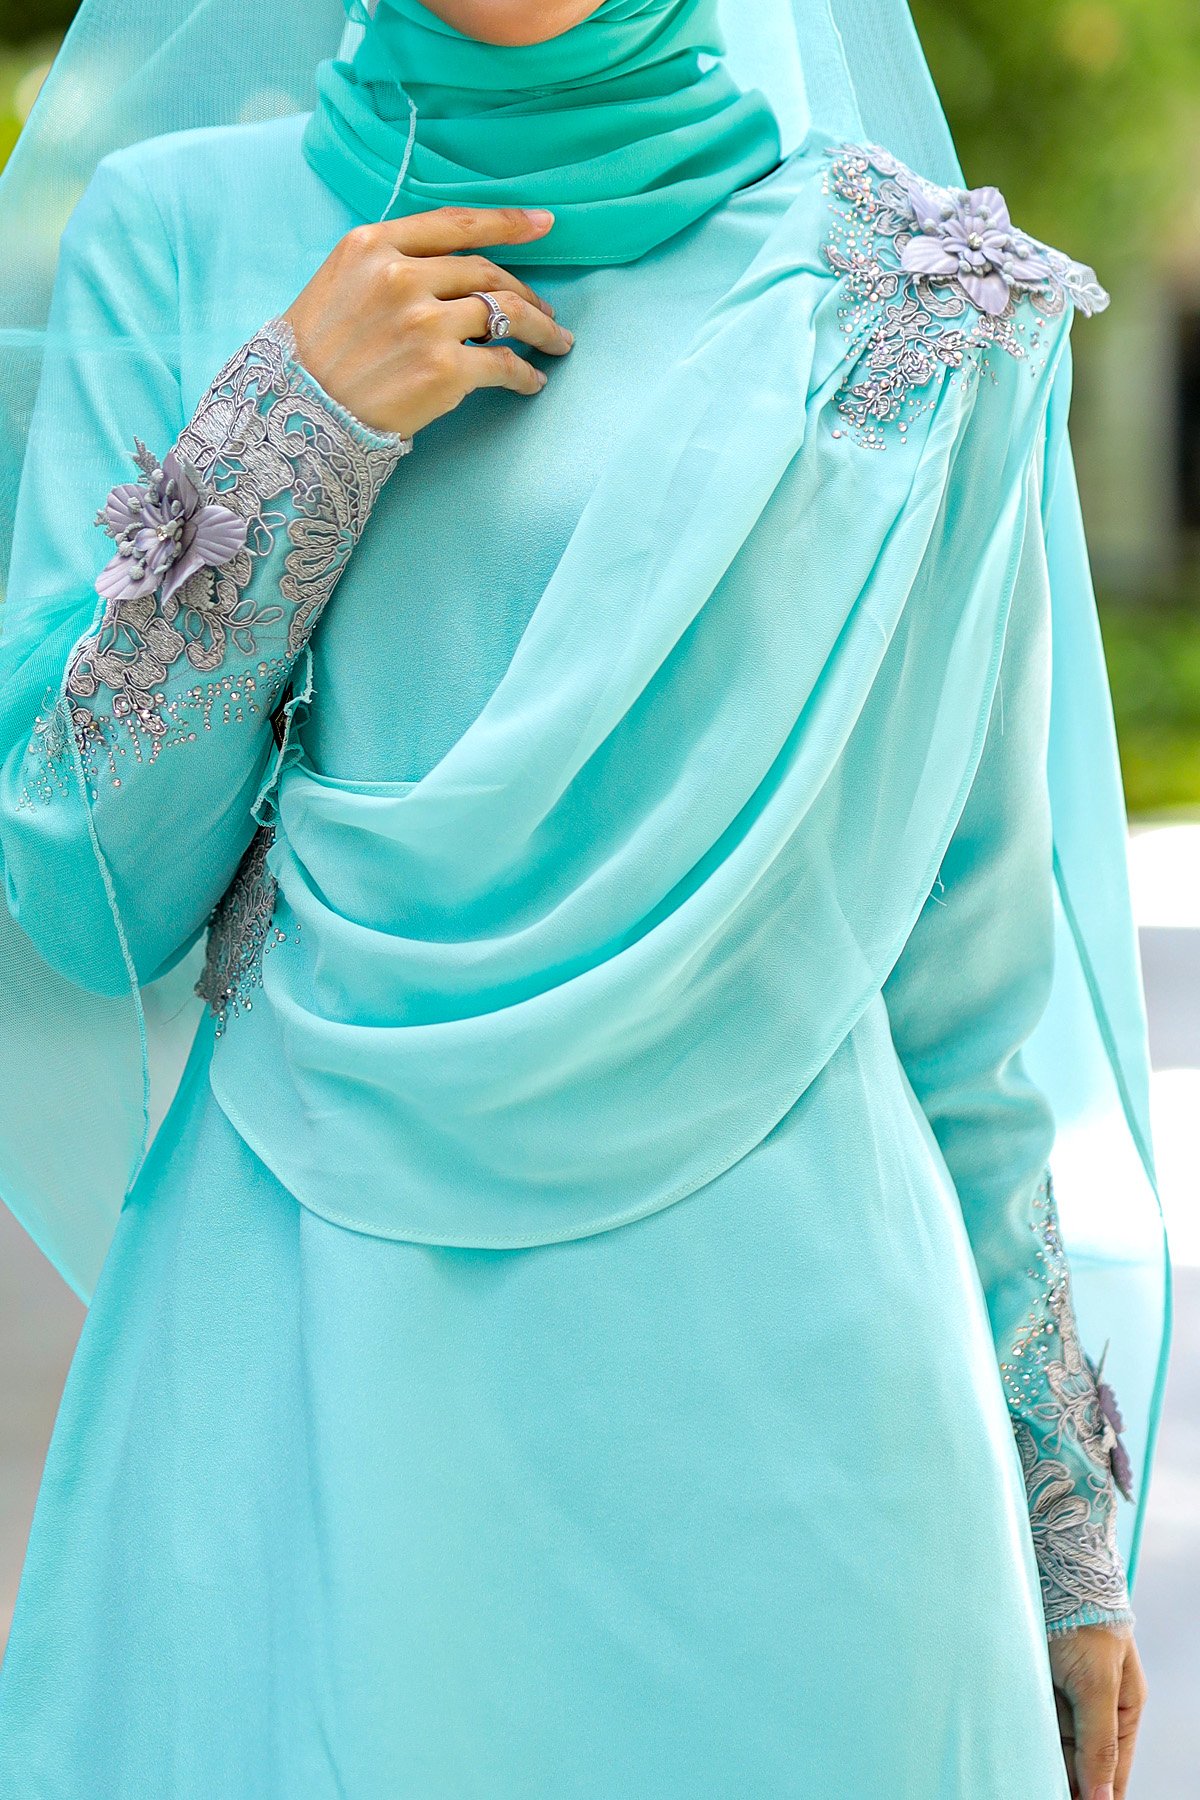 Get Baju Raya Hijau Mint Pics